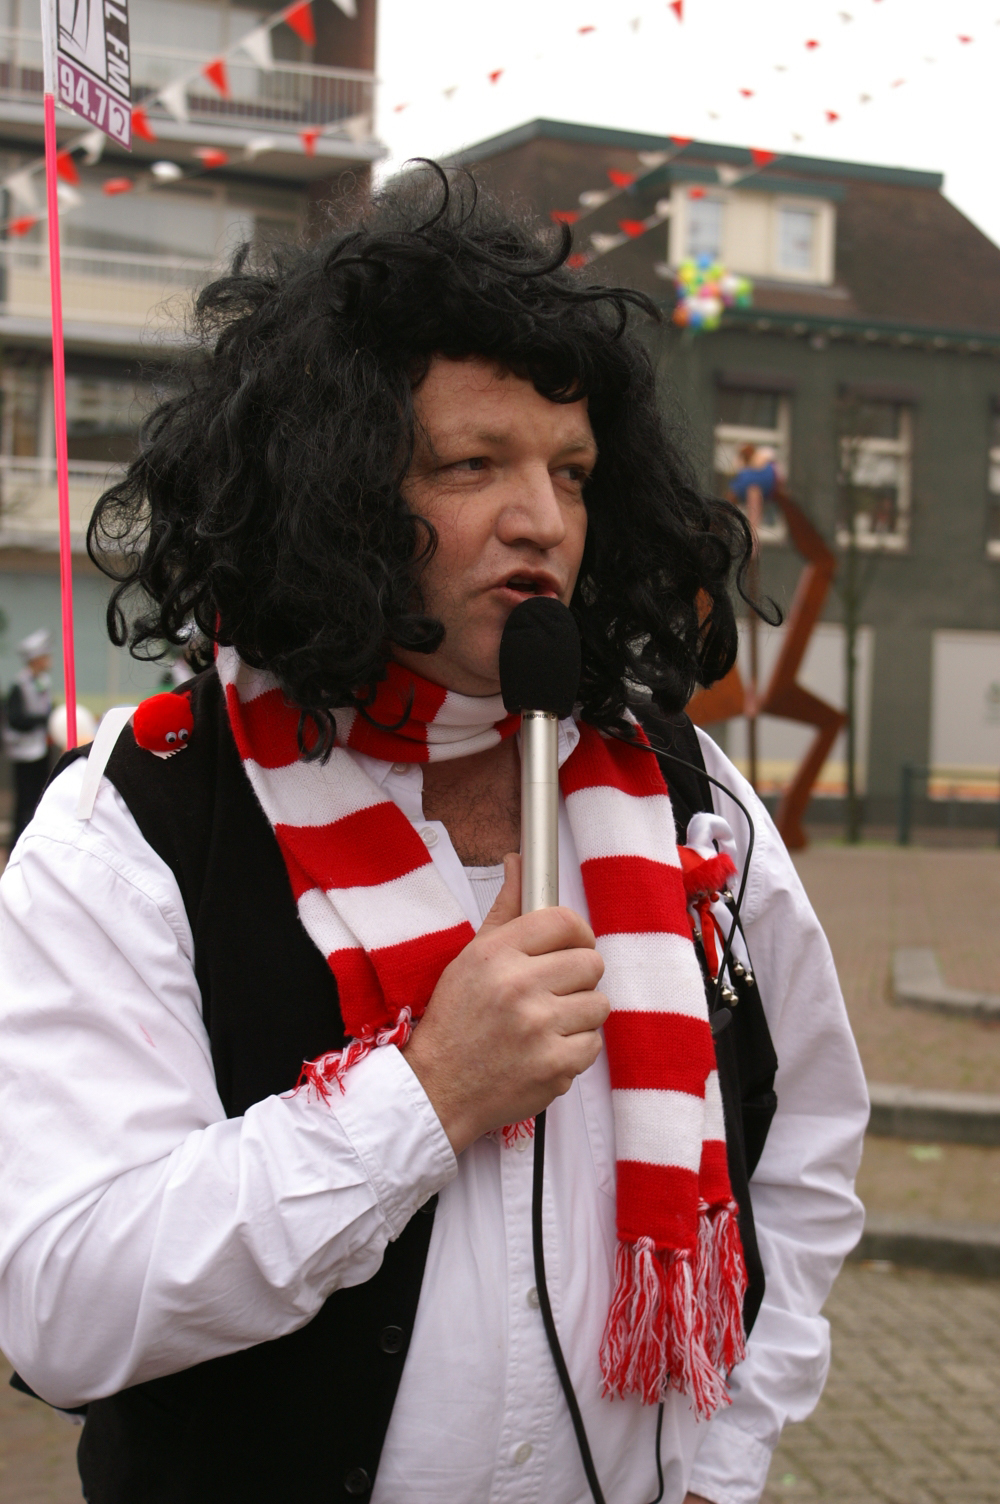 Gerrit tijdens een live optreden in 't centrum van Zillewold